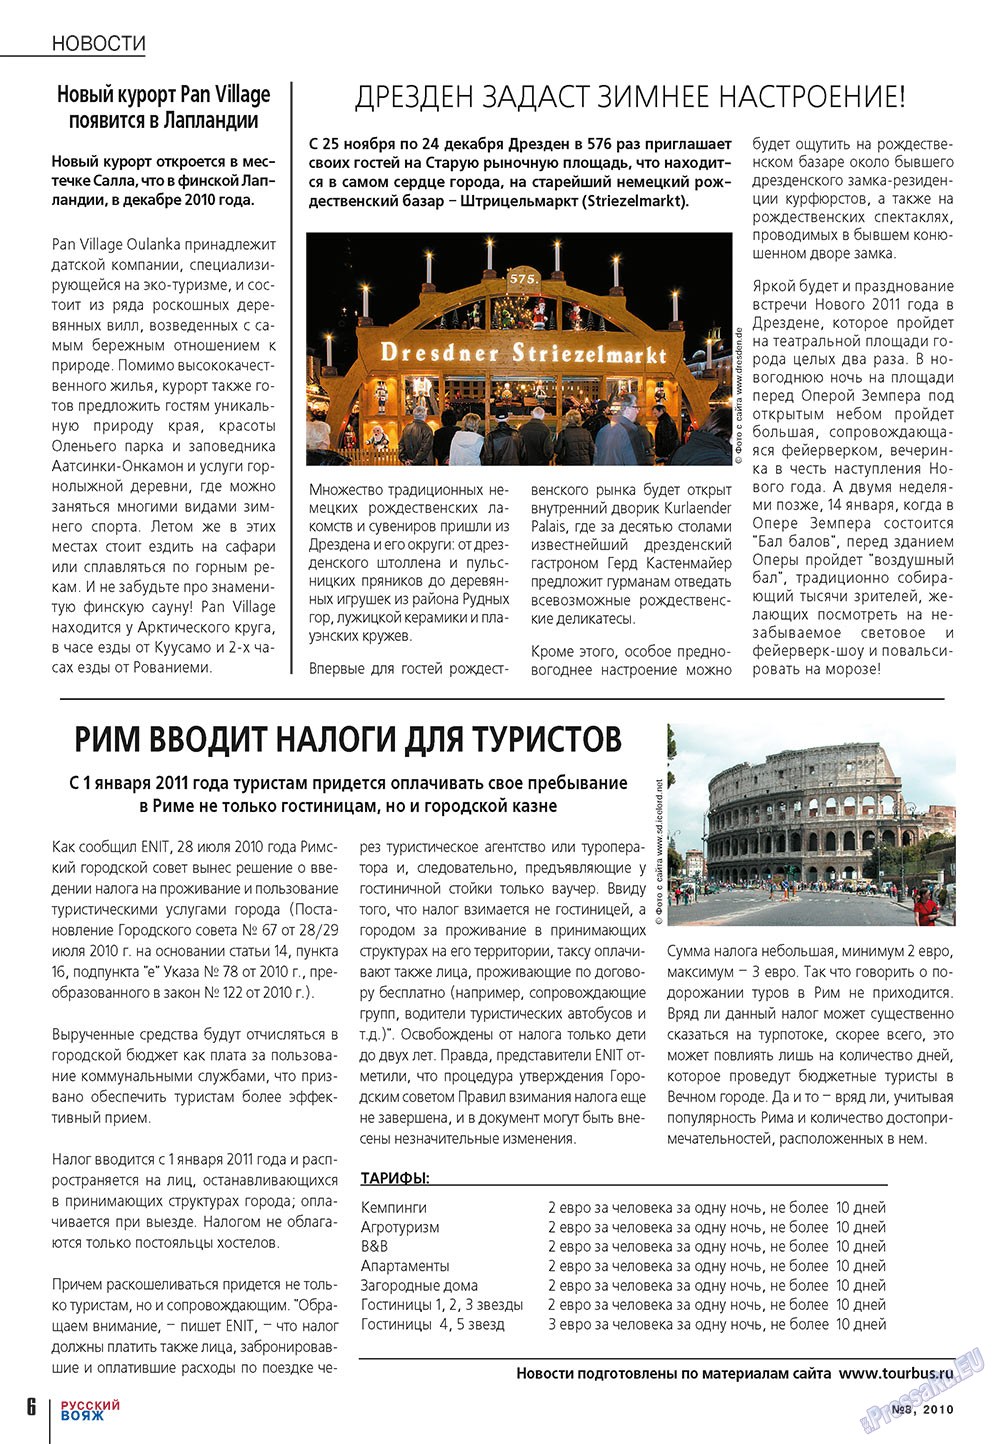 Русский вояж (журнал). 2010 год, номер 8, стр. 6